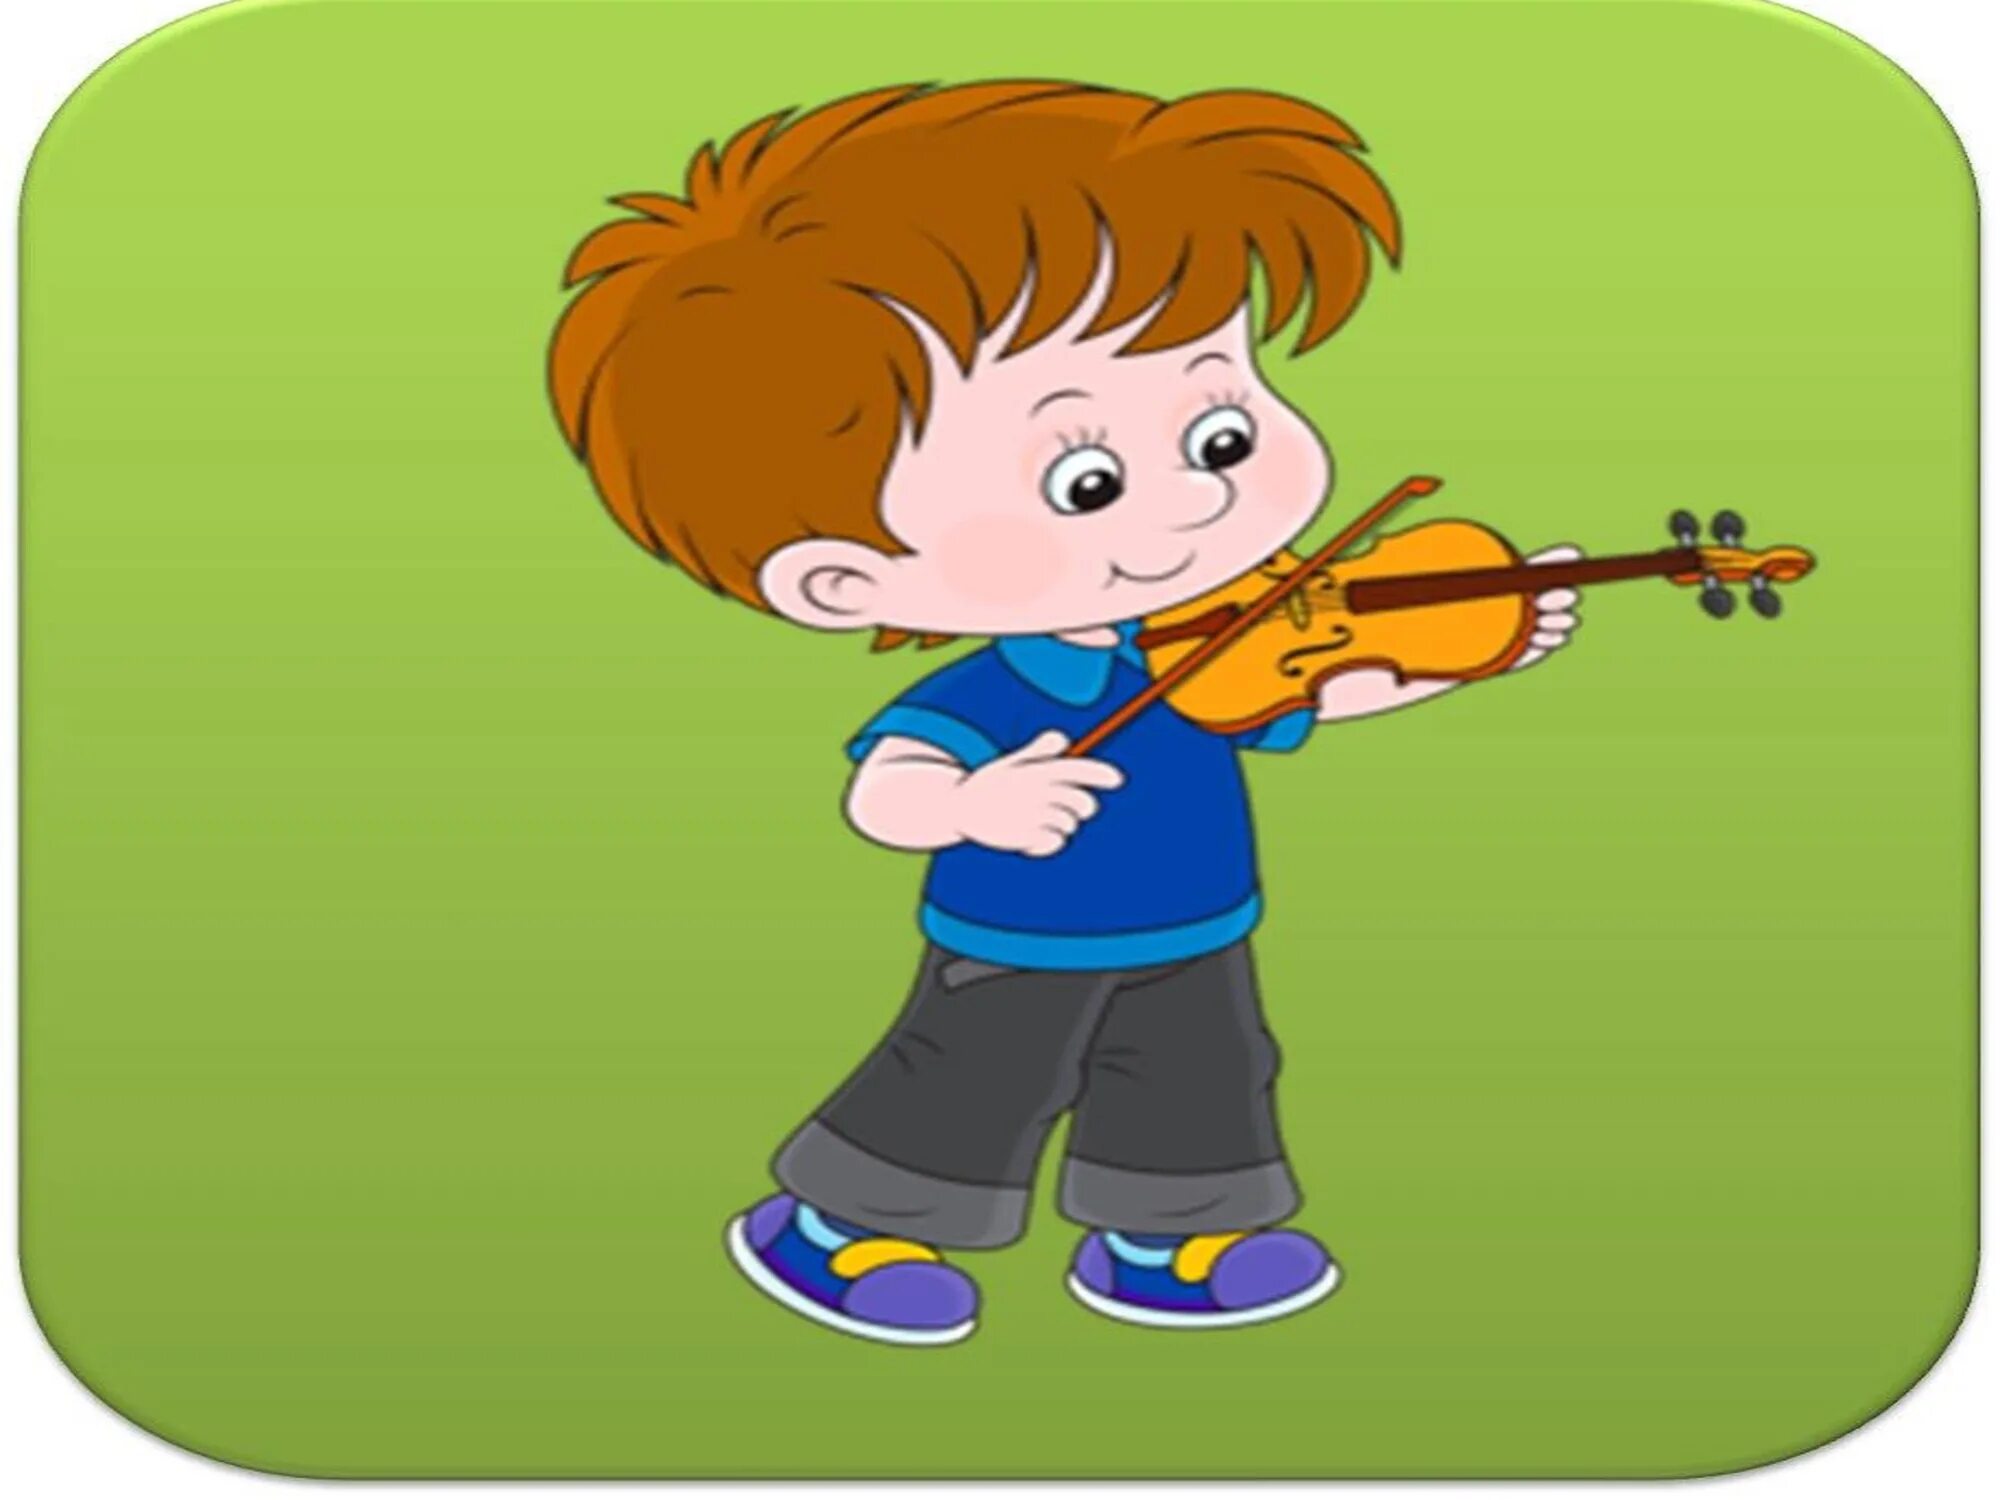 Русскими мальчик музыка. Дети играют на музыкальных инструментах. Музыкальные картинки для детей. Нарисованные дети играют на музыкальных инструментах. Музыкальные инструменты для детей.